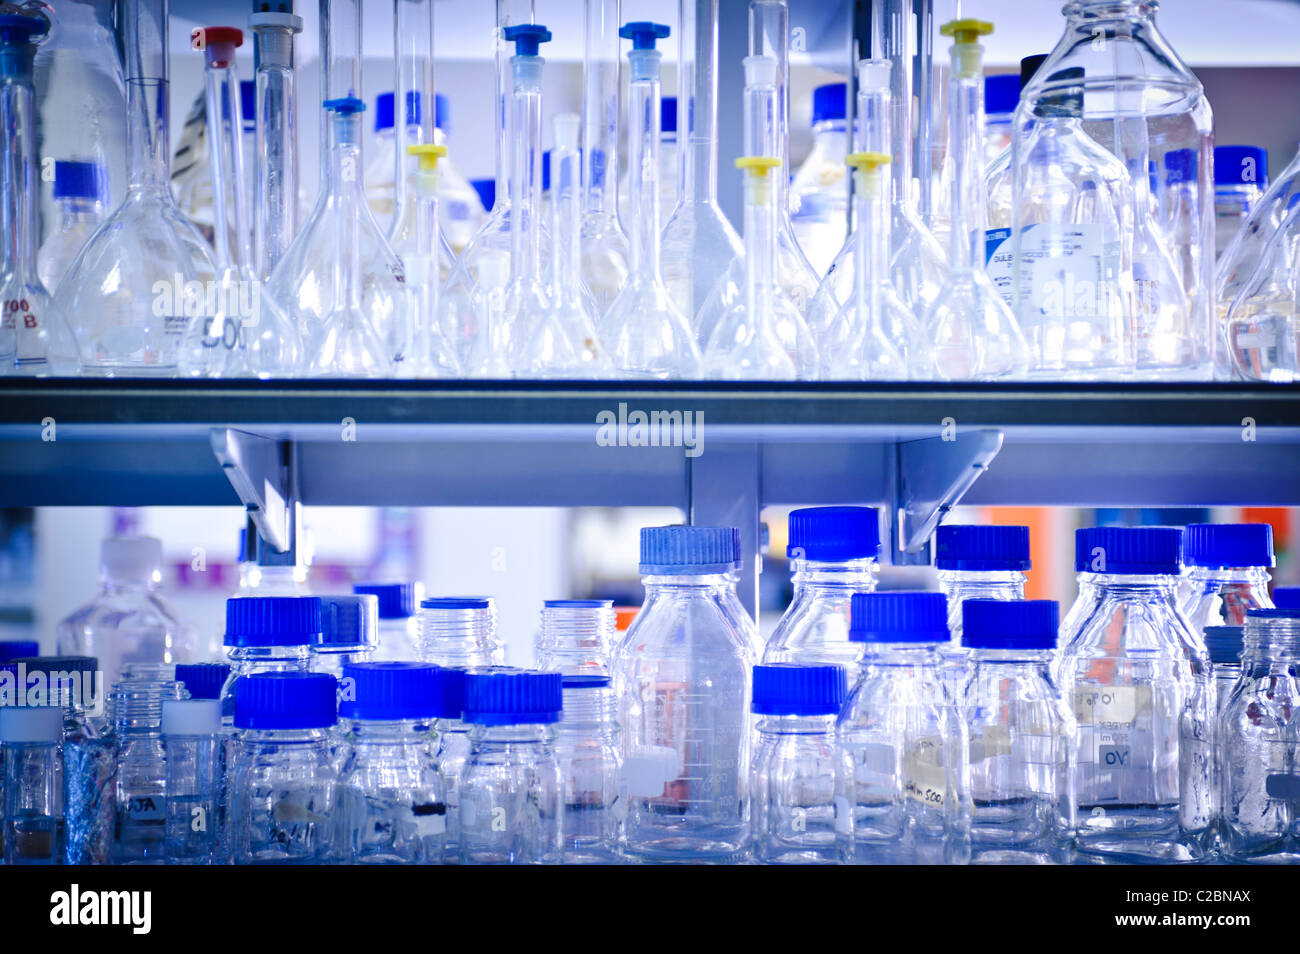 Glas-Flaschen und Gläser Becher und Reagenzgläser mit leuchtend blauen Tops auf Regal im Wissenschaftslabor Stockfoto